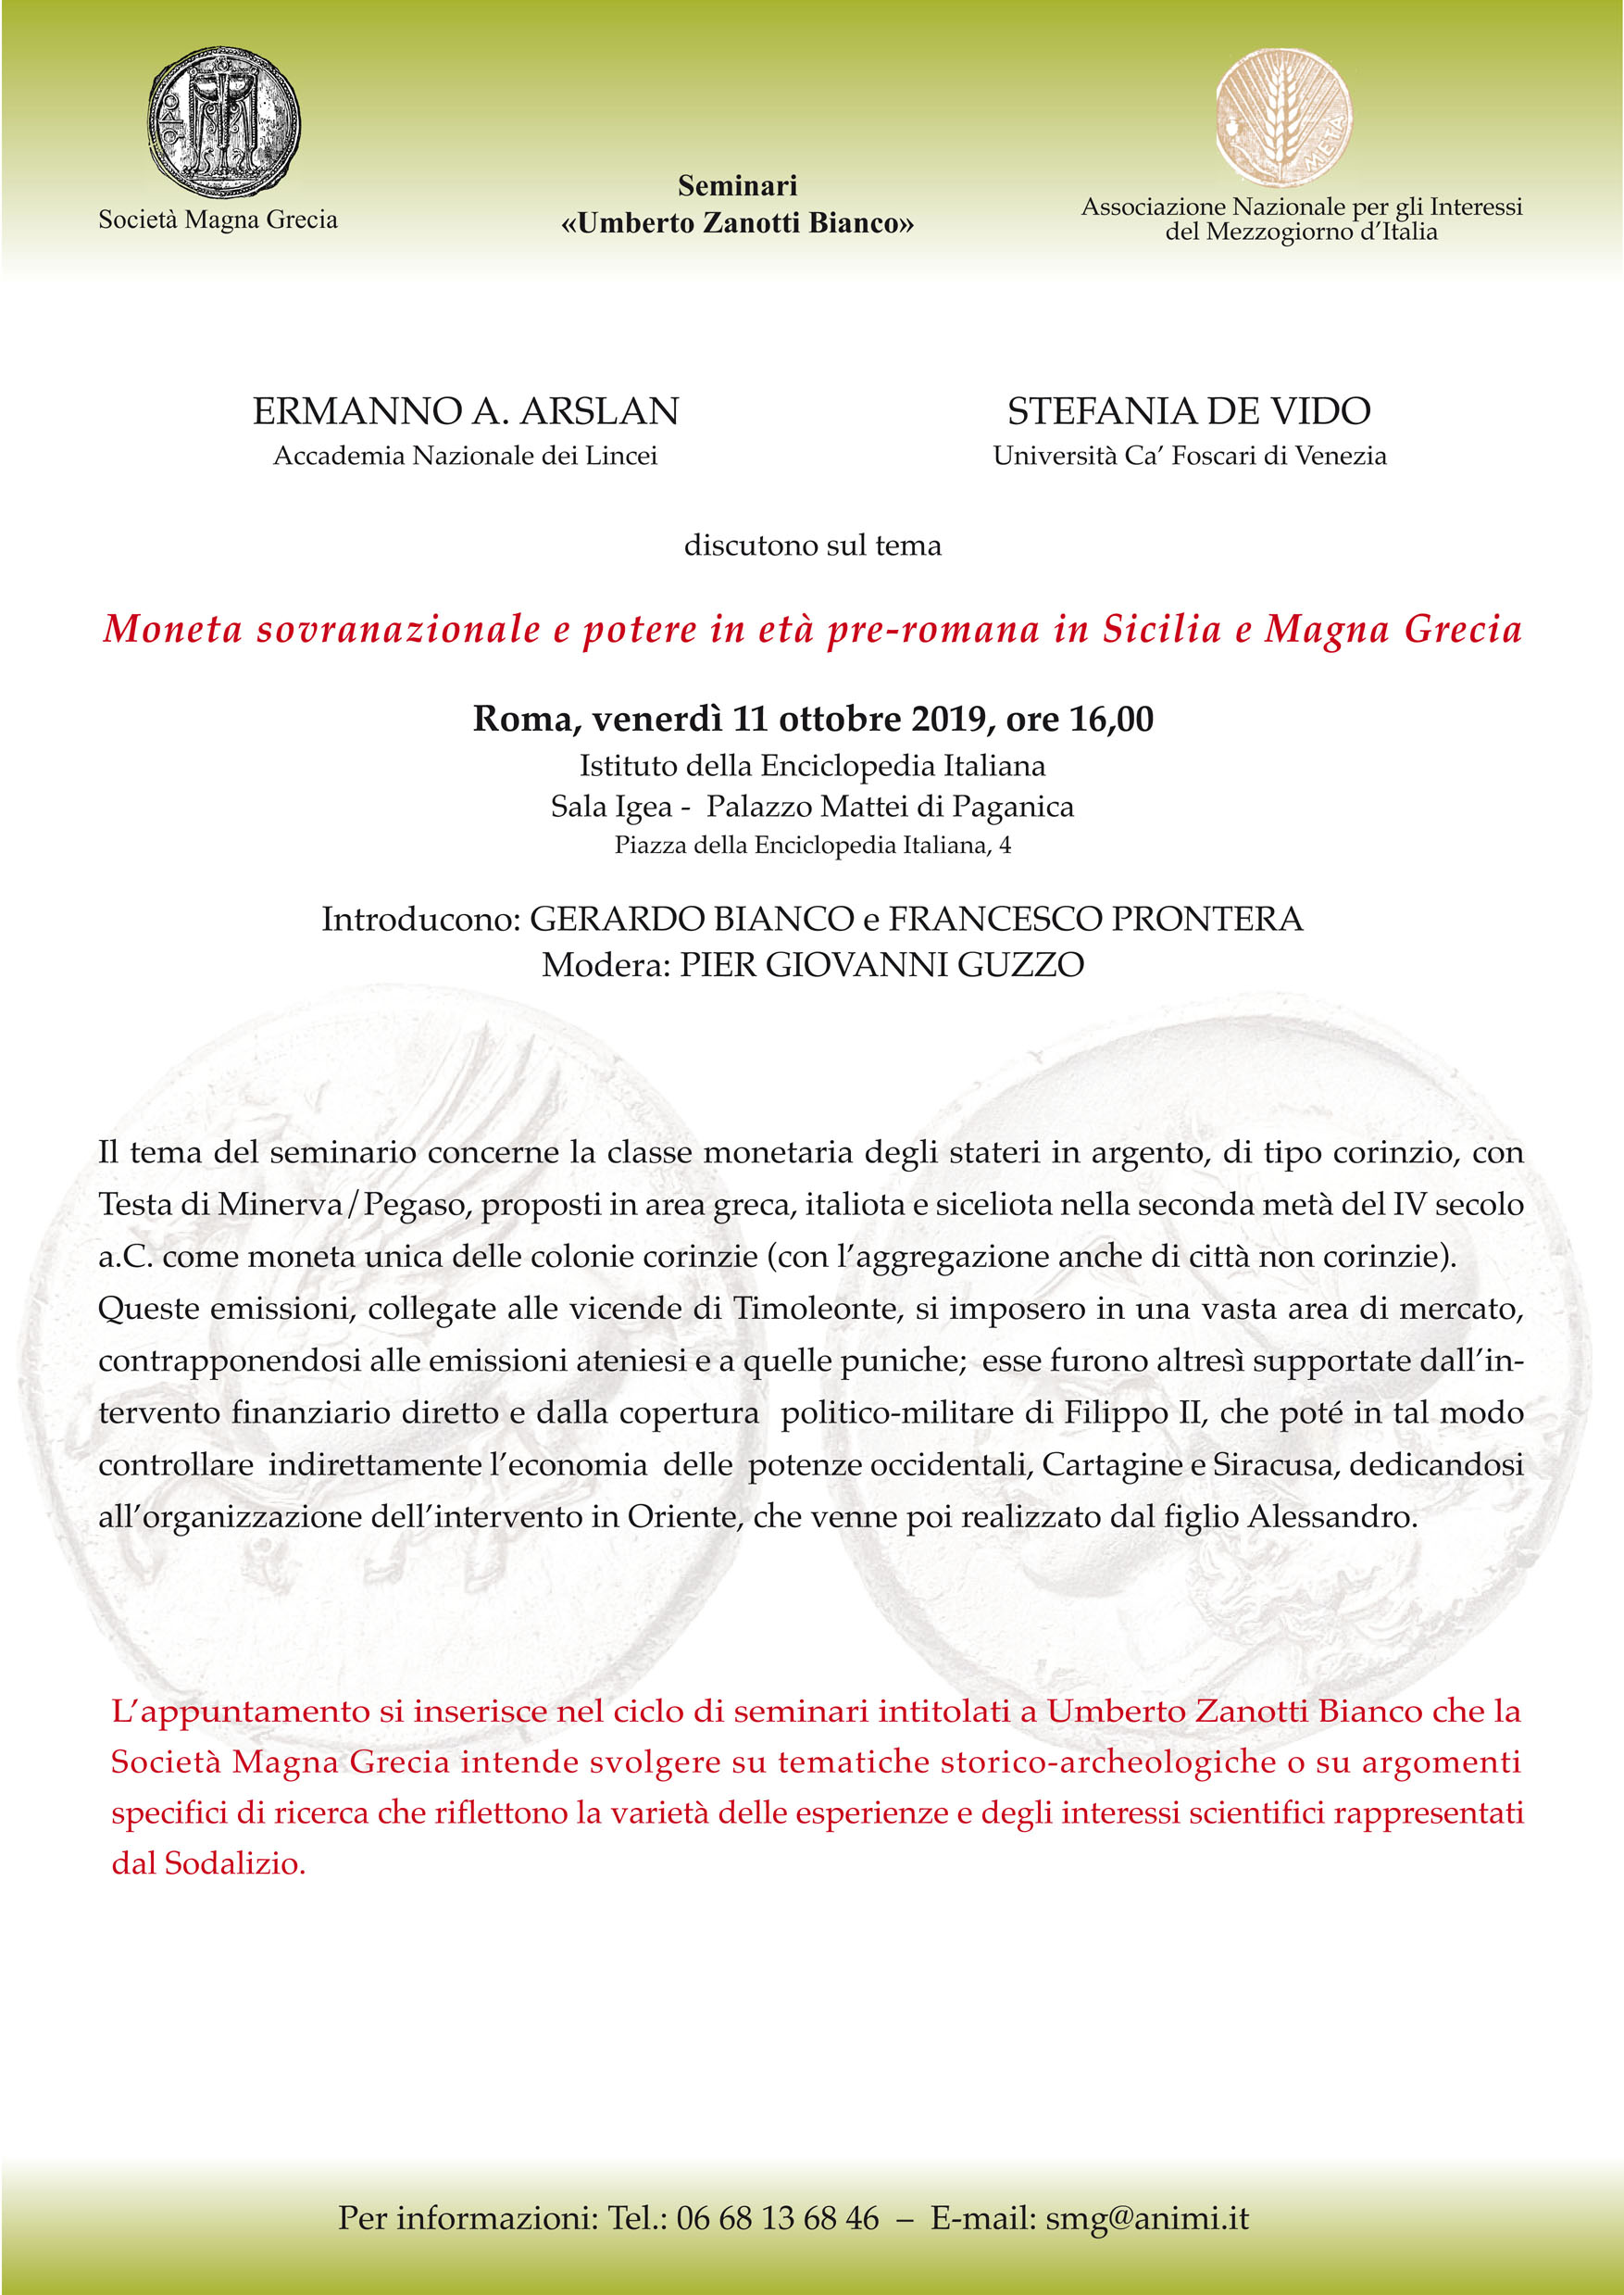 Moneta sovranazionale e potere in età pre-romana in Sicilia e Magna Grecia, Roma 11 ottobre 2019